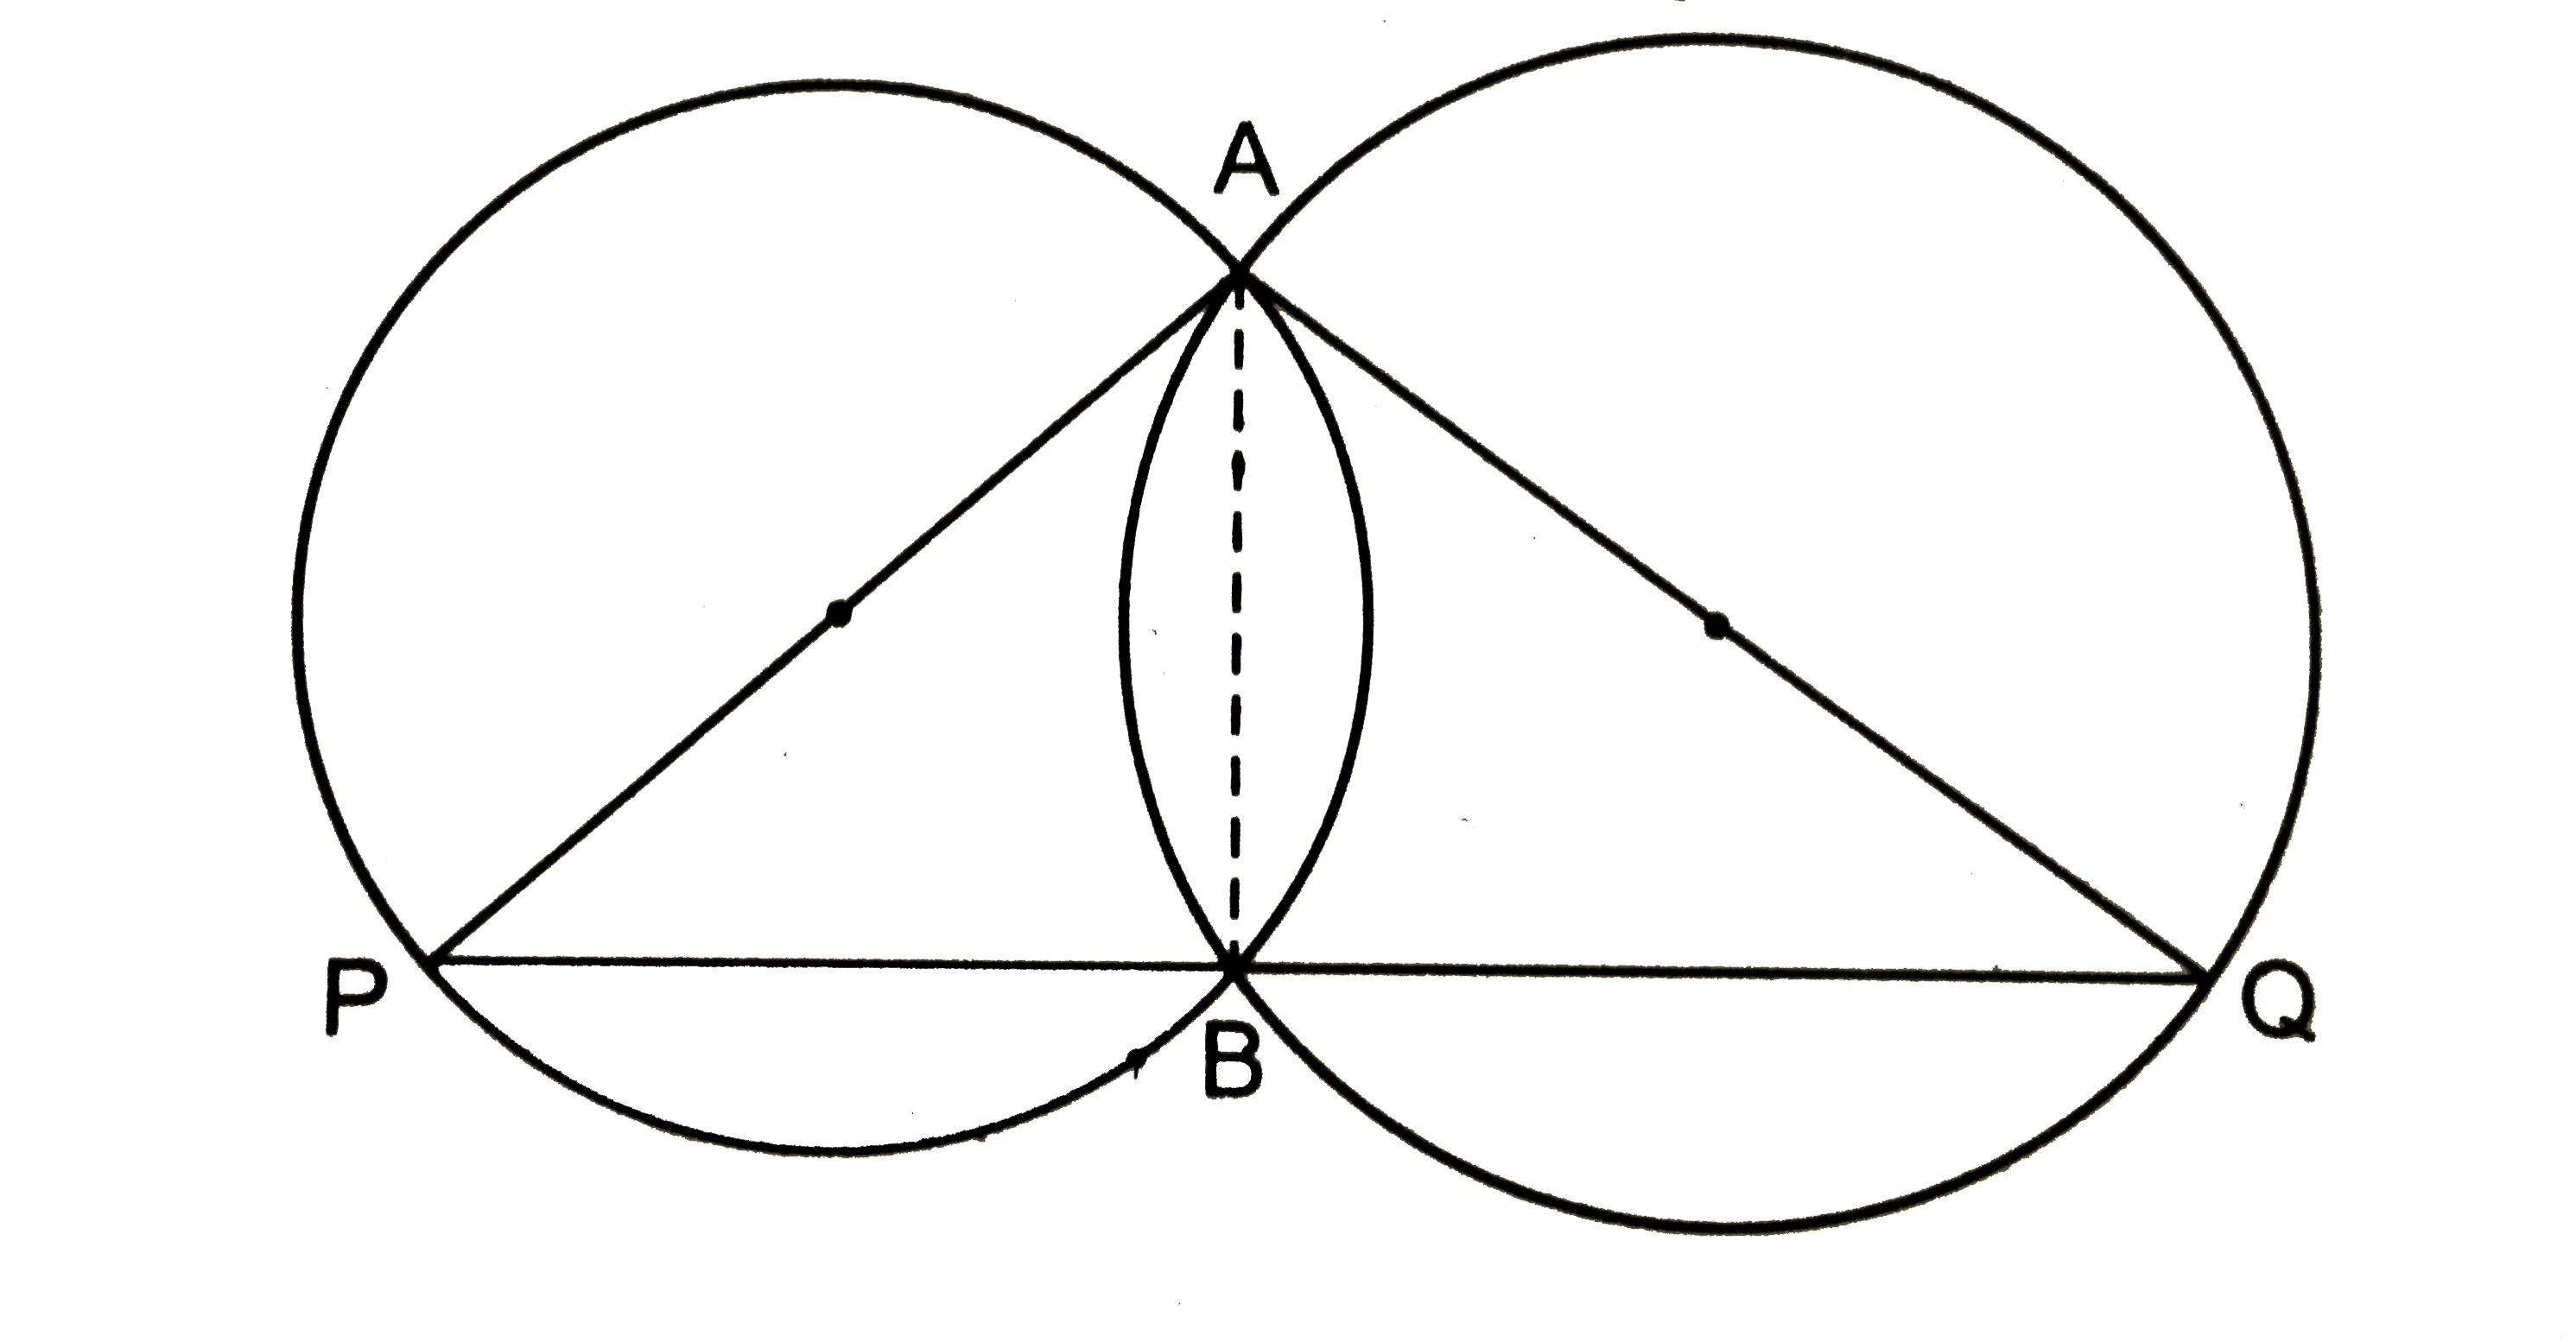 यदि किसी त्रिभुज की दो भुजाओं को व्यास मानकर वृत्त खींचे जाएँ, तो सिद्ध कीजिए कि इन वृत्तों का प्रतिच्छेद बिन्दु तीसरी भुजा पर स्थित है |